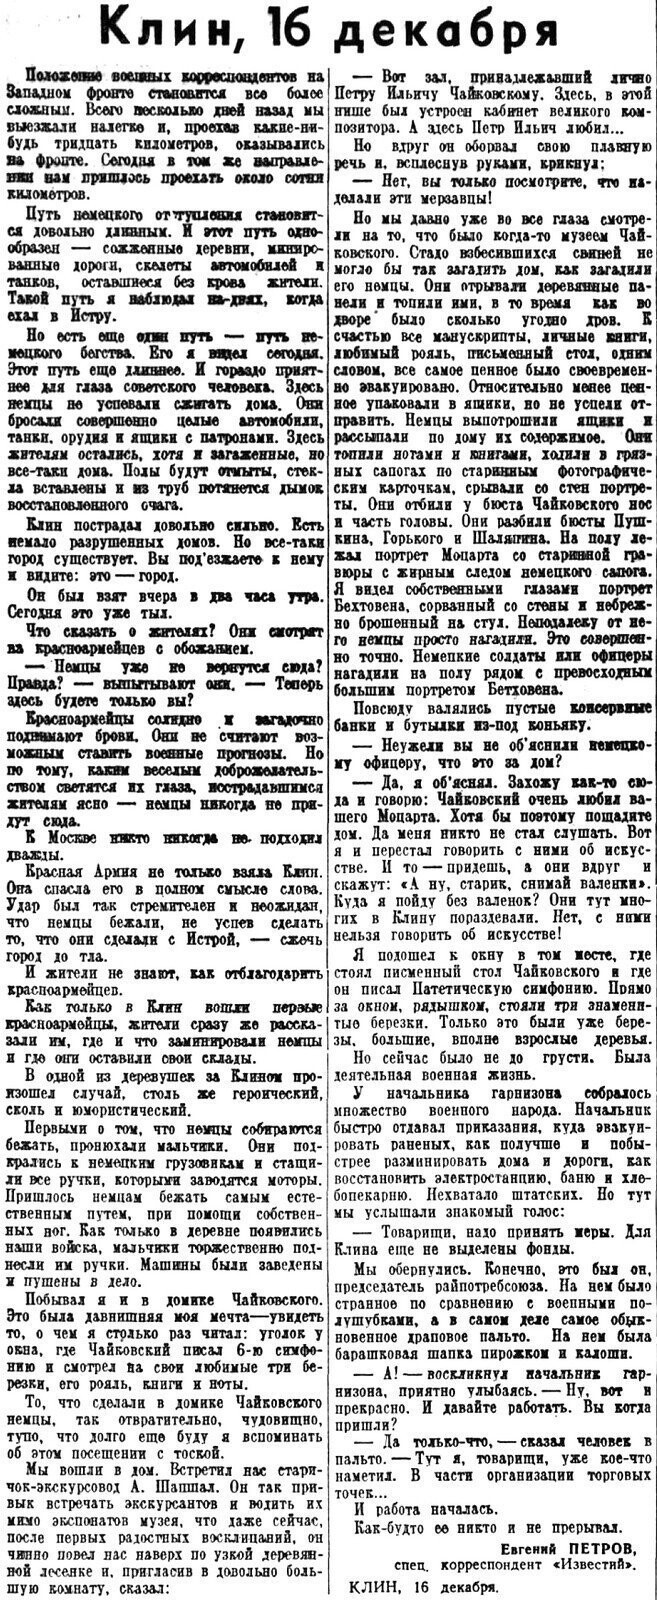 «Известия», 16 декабря 1941 г.